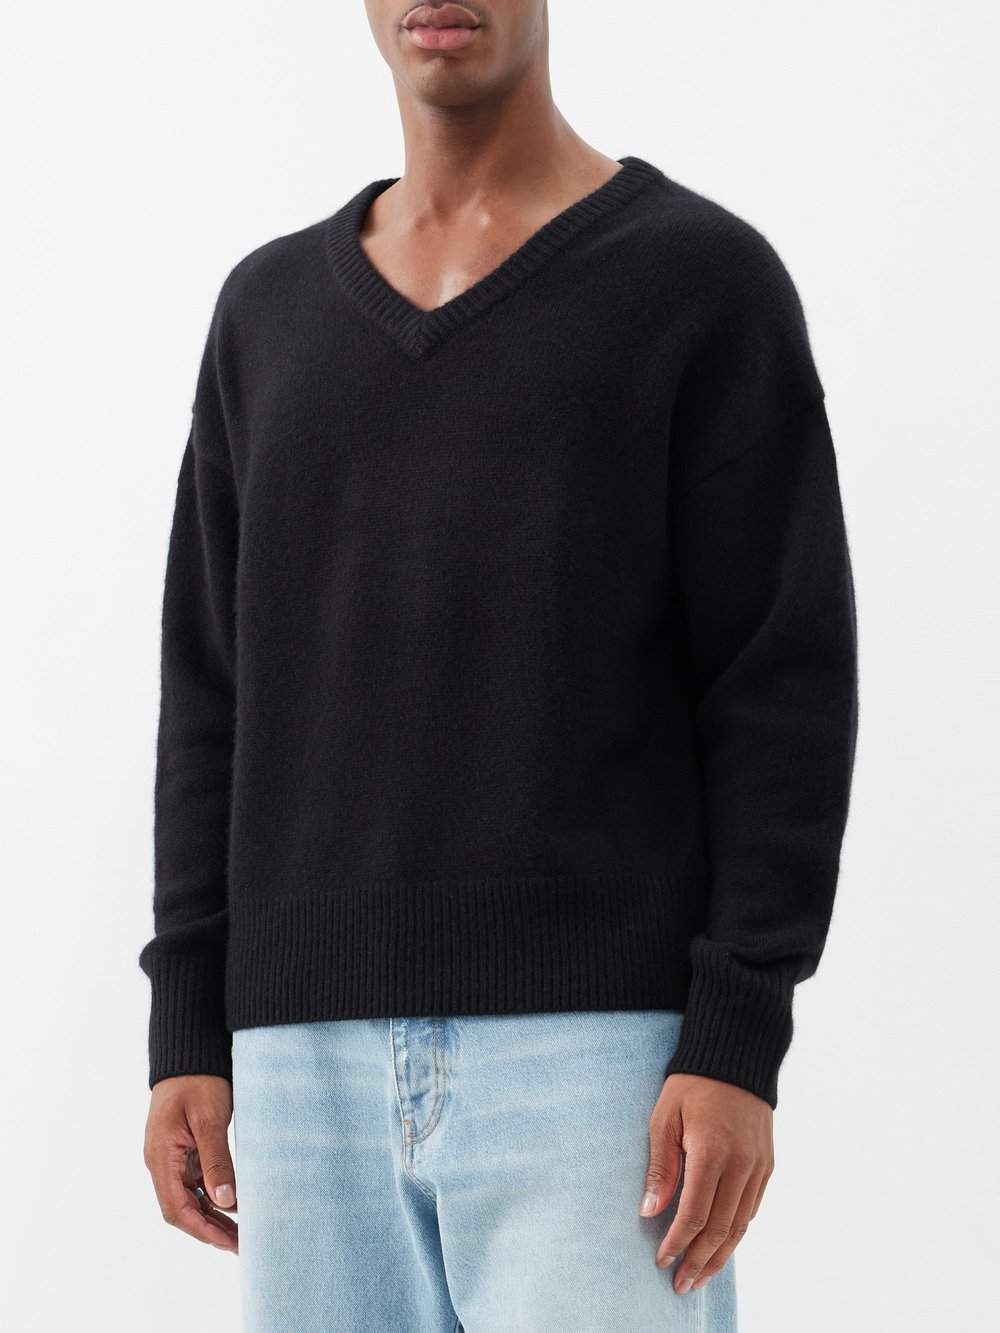 цена Кашемировый свитер mr battersea с v-образным вырезом Arch4, черный